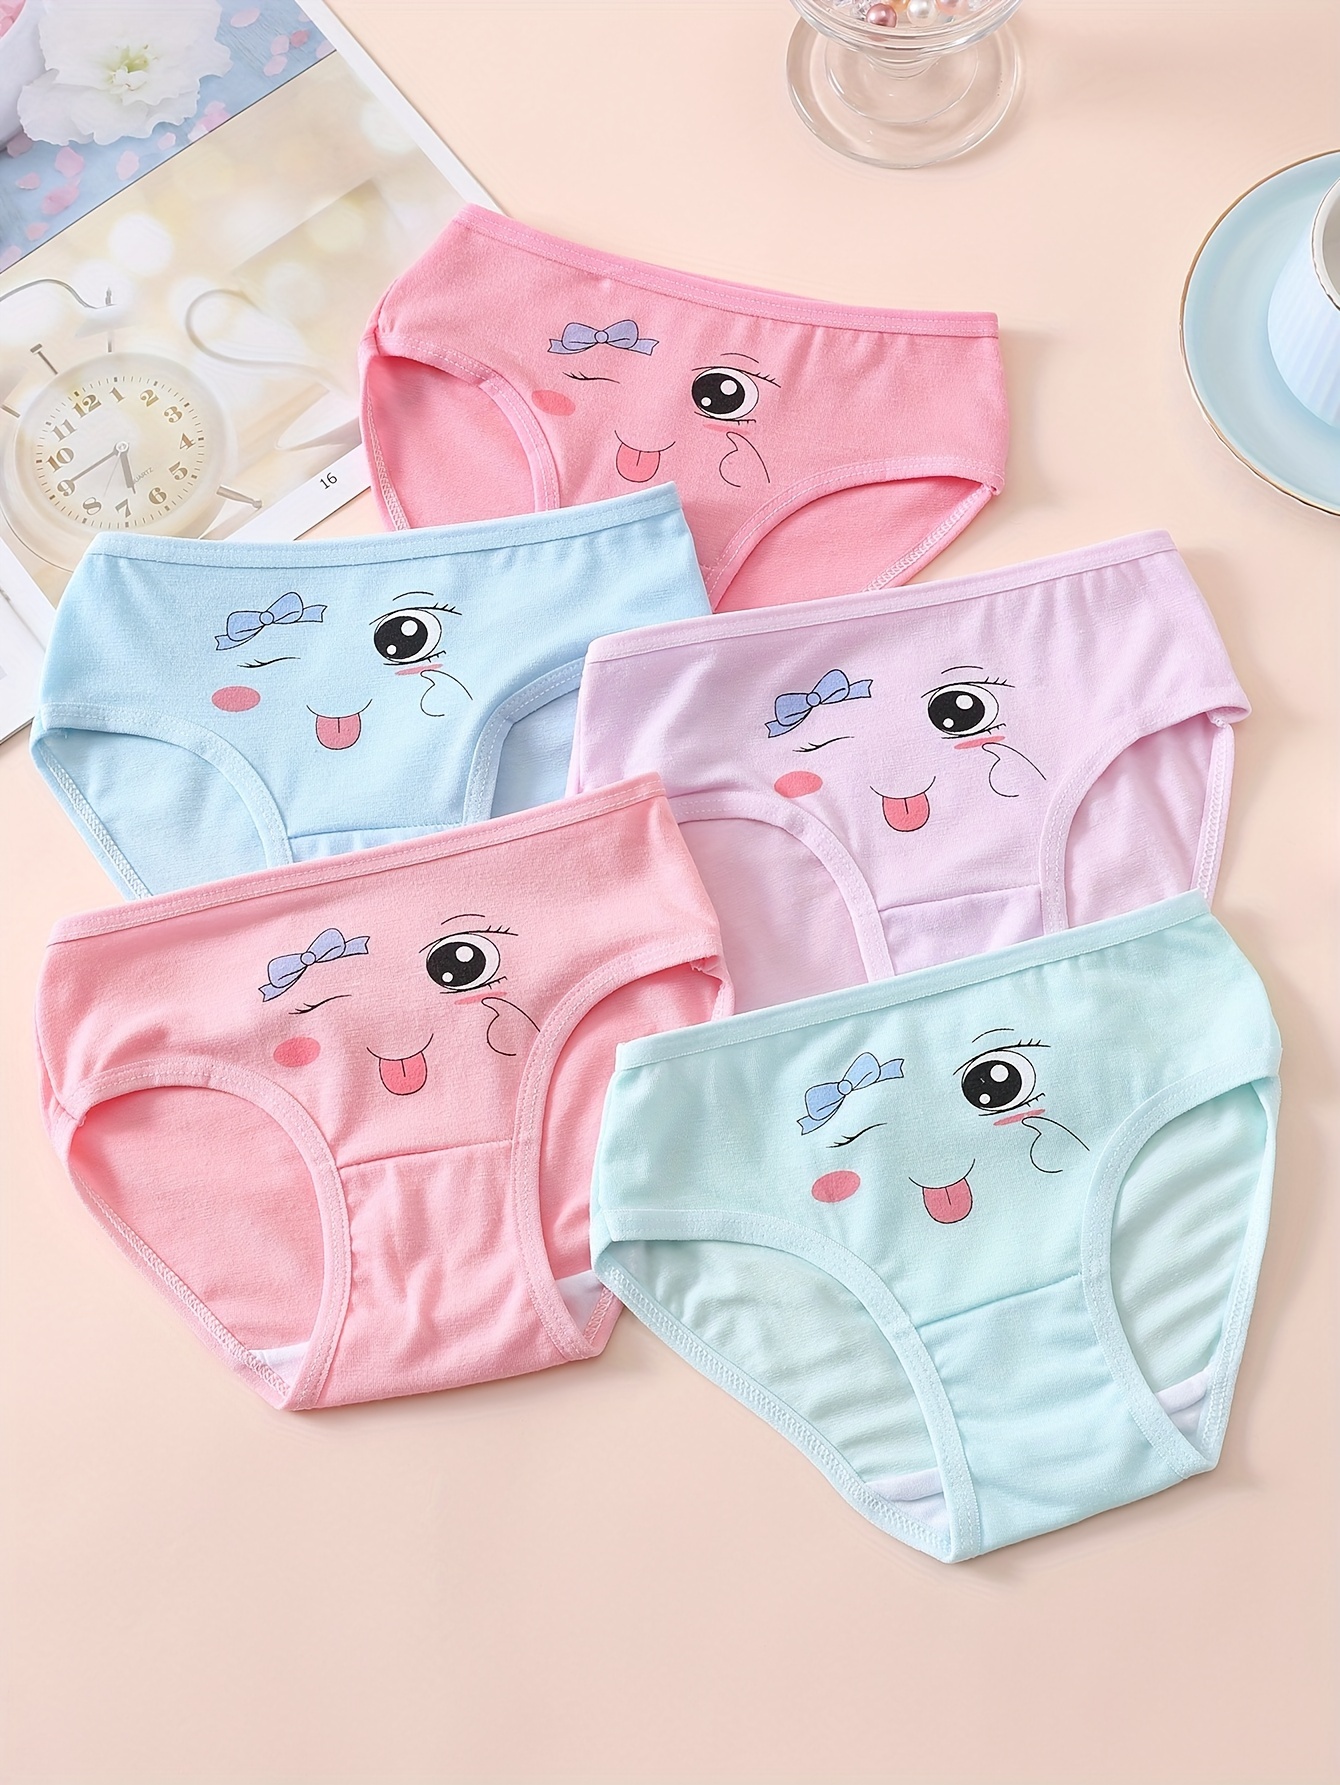 3pcs/lot Boxer Girls Underwear princess Children Kids Baby Panties